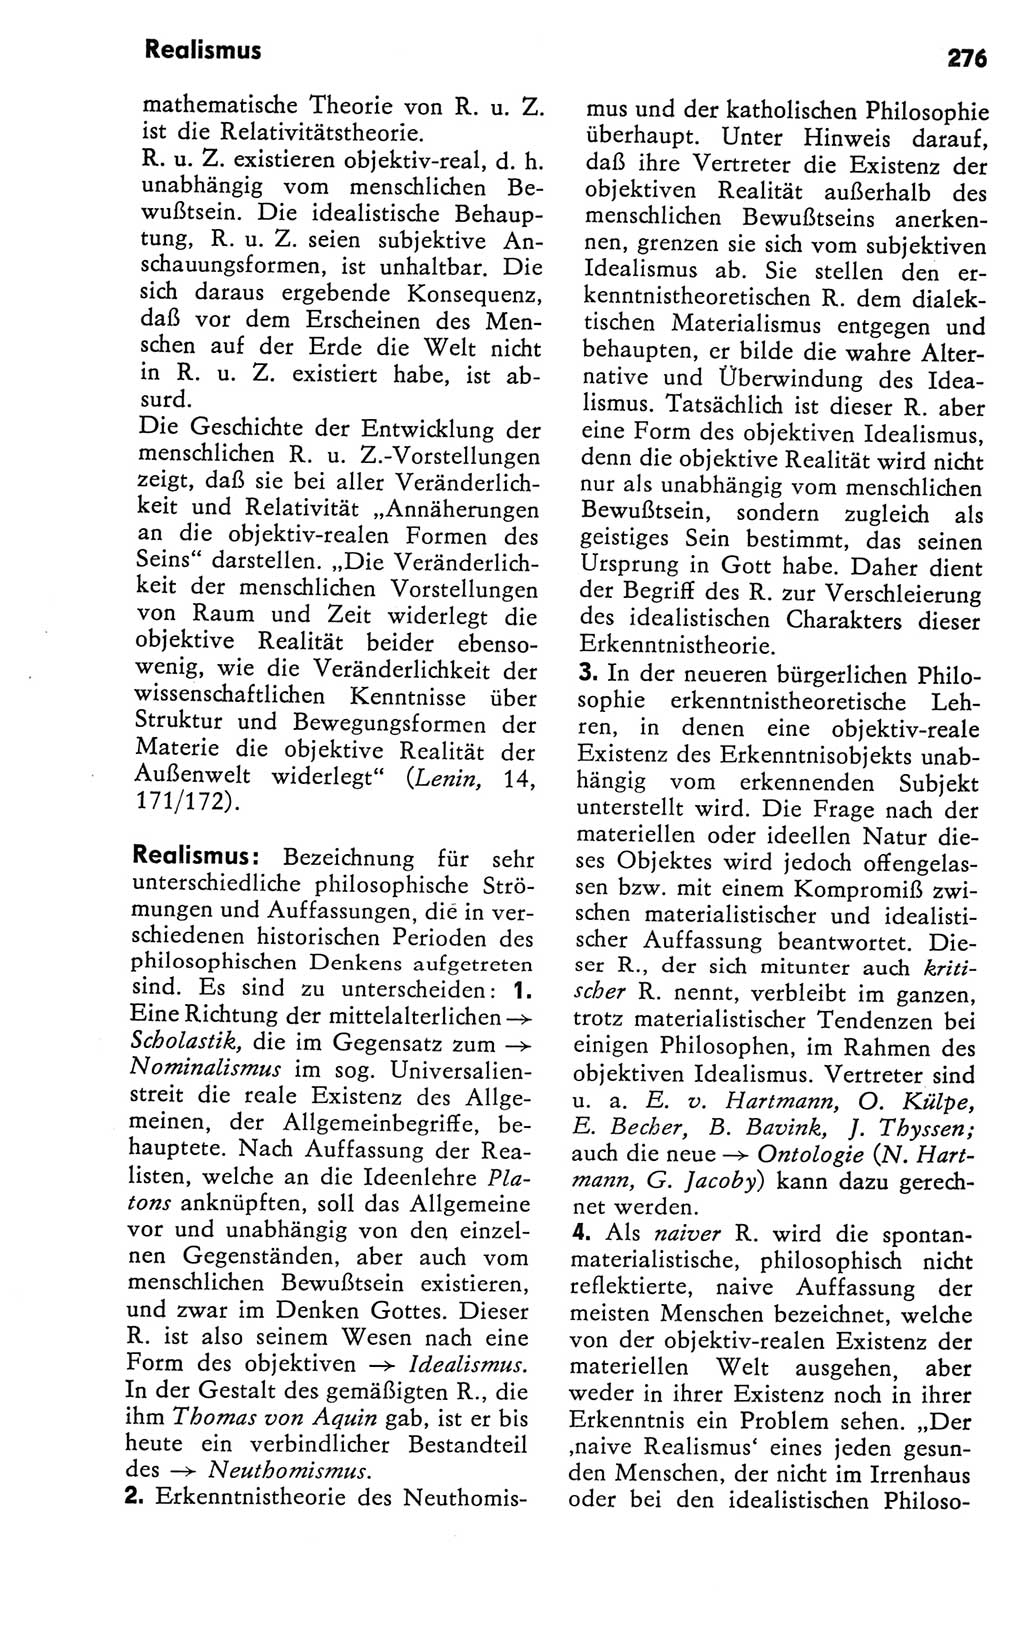 Kleines Wörterbuch der marxistisch-leninistischen Philosophie [Deutsche Demokratische Republik (DDR)] 1981, Seite 276 (Kl. Wb. ML Phil. DDR 1981, S. 276)